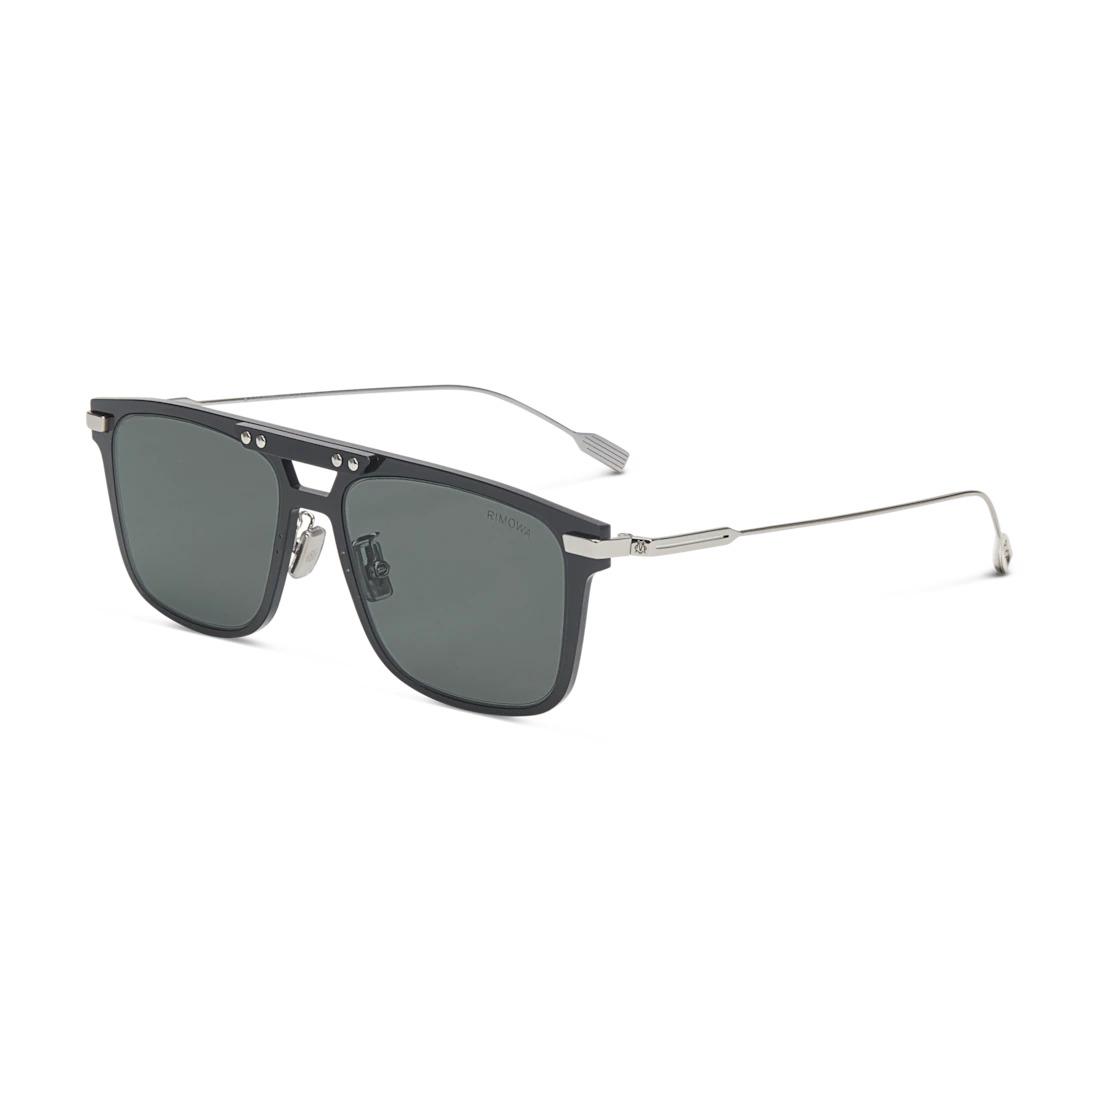 Eyewear Square Black Smoke Polarized Sunglasses - 3